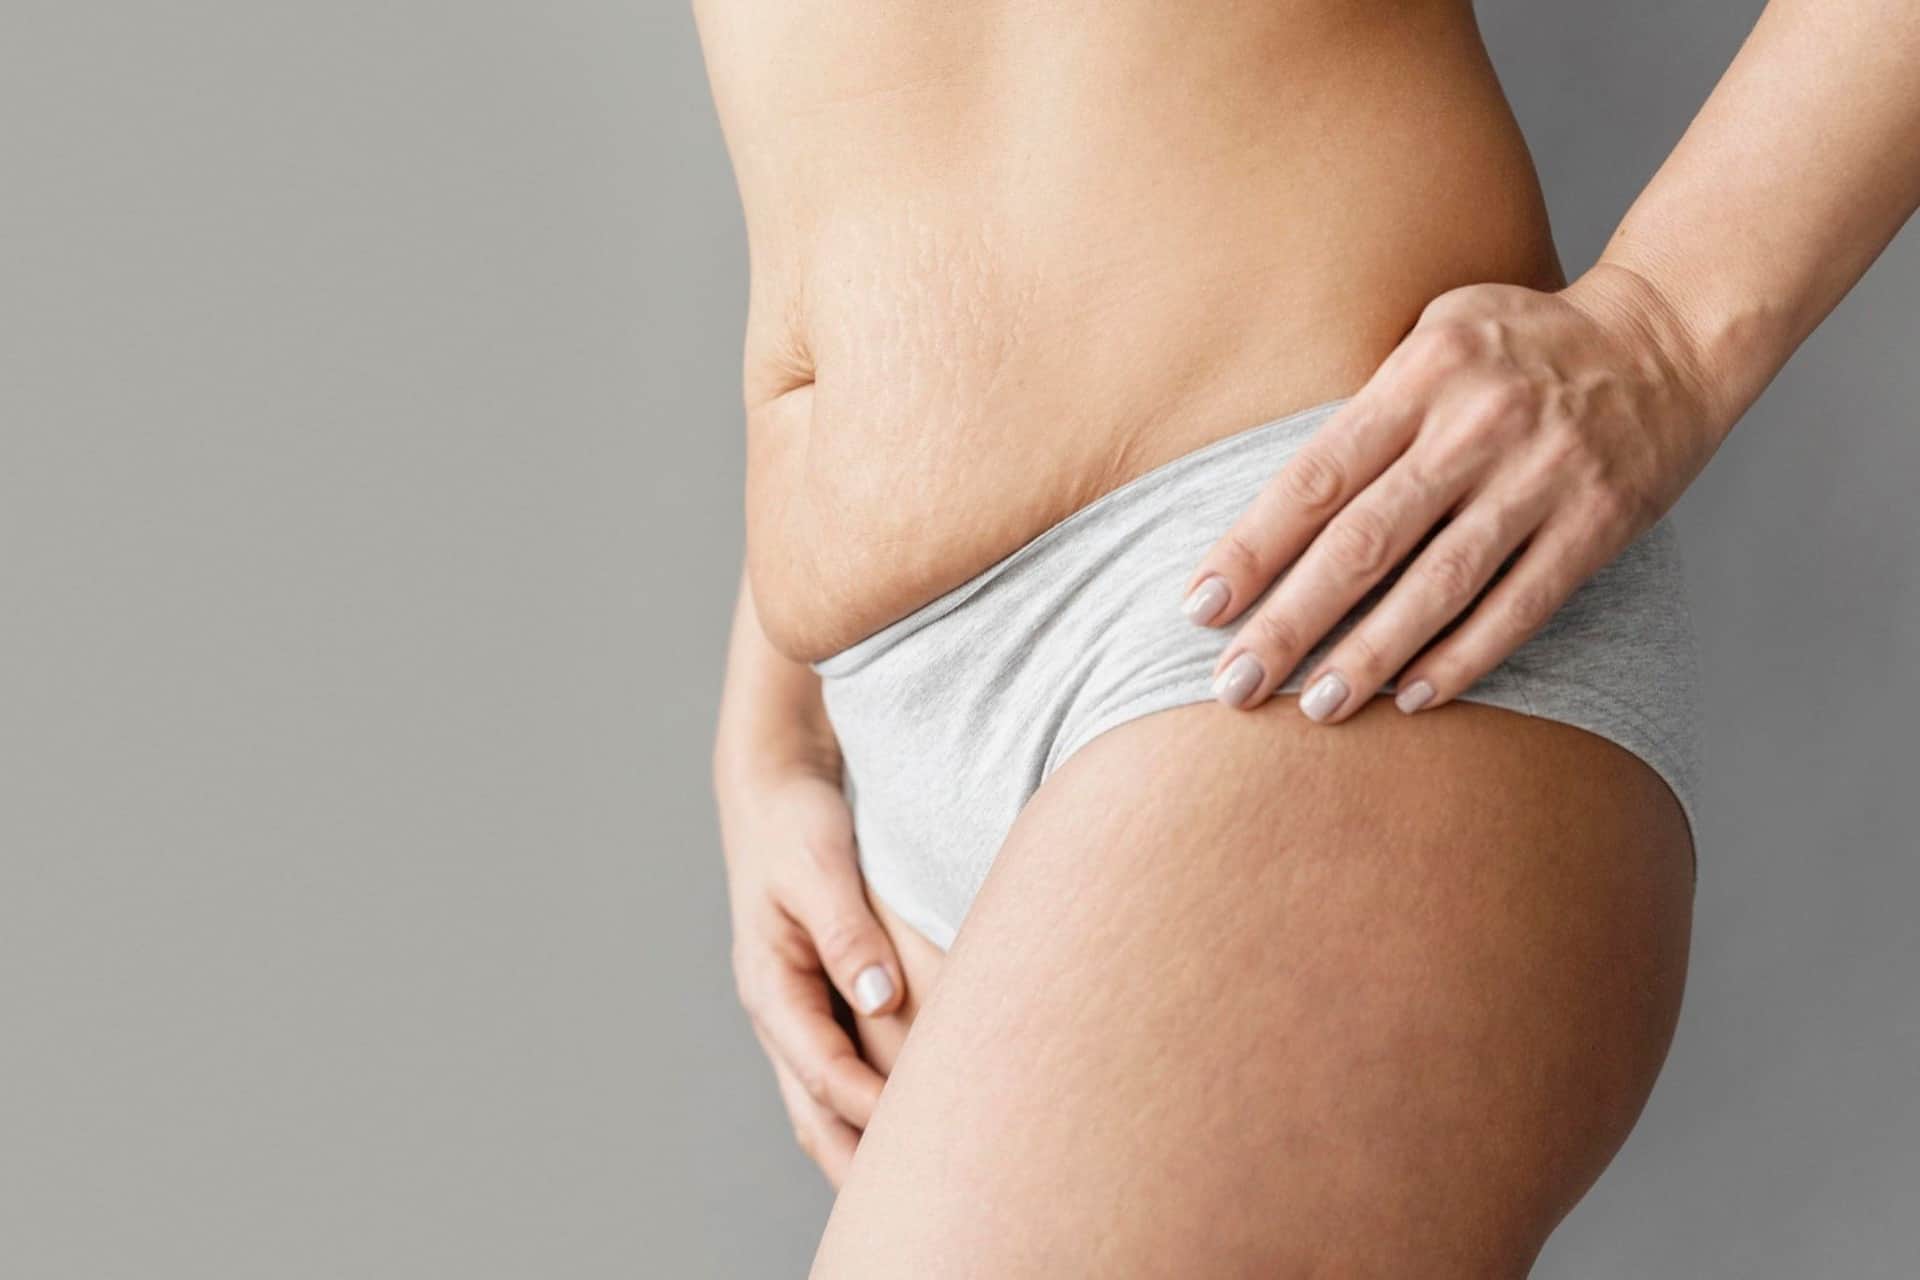 L'immagine mostra una pelle con smagliature su fianchi e cosce. Le smagliature possono verificarsi a causa di cambiamenti rapidi di peso, gravidanza, crescita durante l'adolescenza o squilibri ormonali.